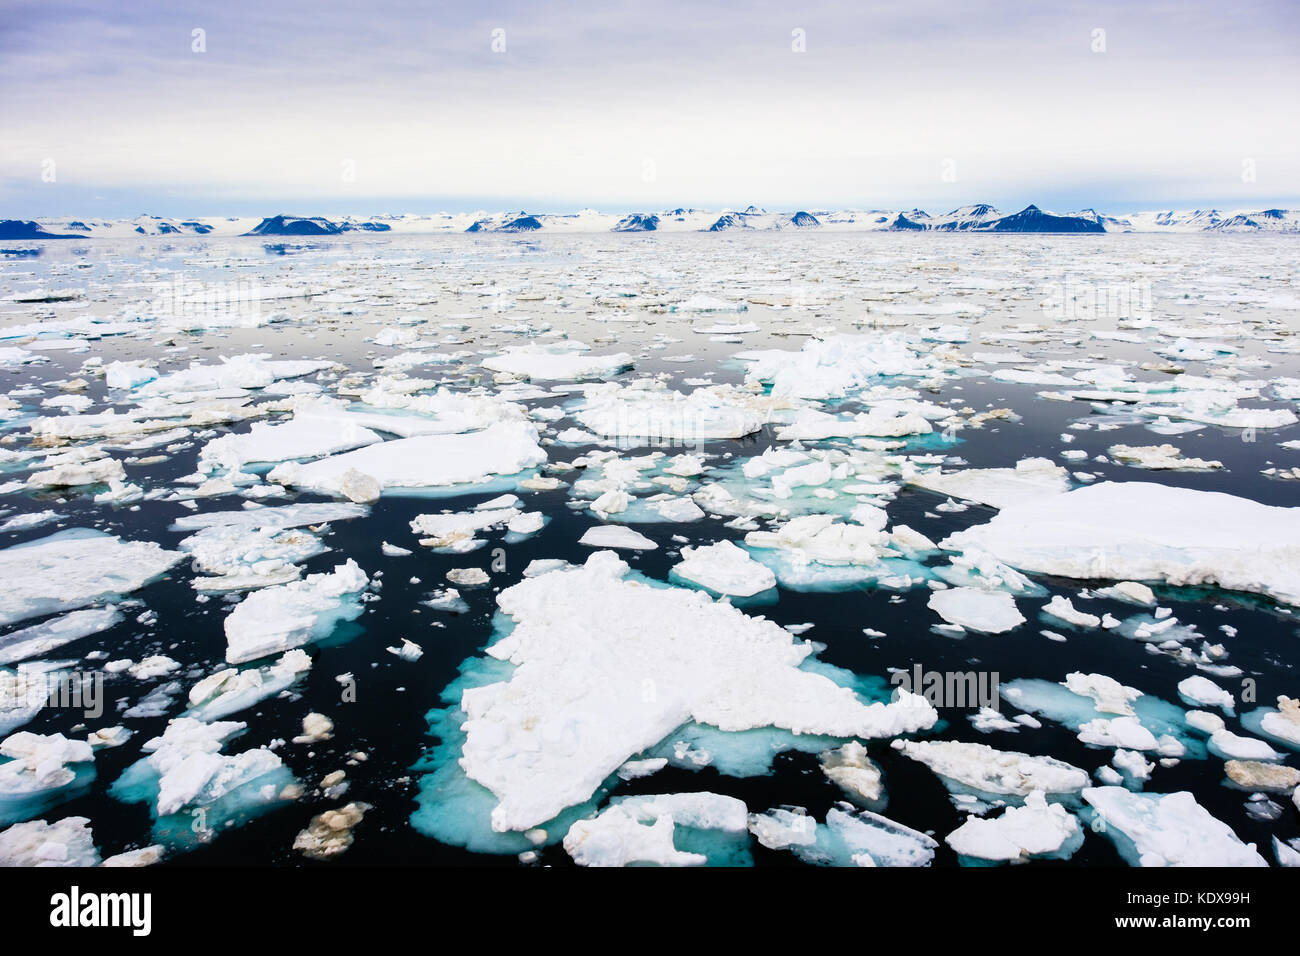 Vue sur mer de glace mer Storfjorden de montagne sur la côte est à 2 h en été arctique. L'île de Spitsbergen, Svalbard, Norvège, Scandinavie Banque D'Images